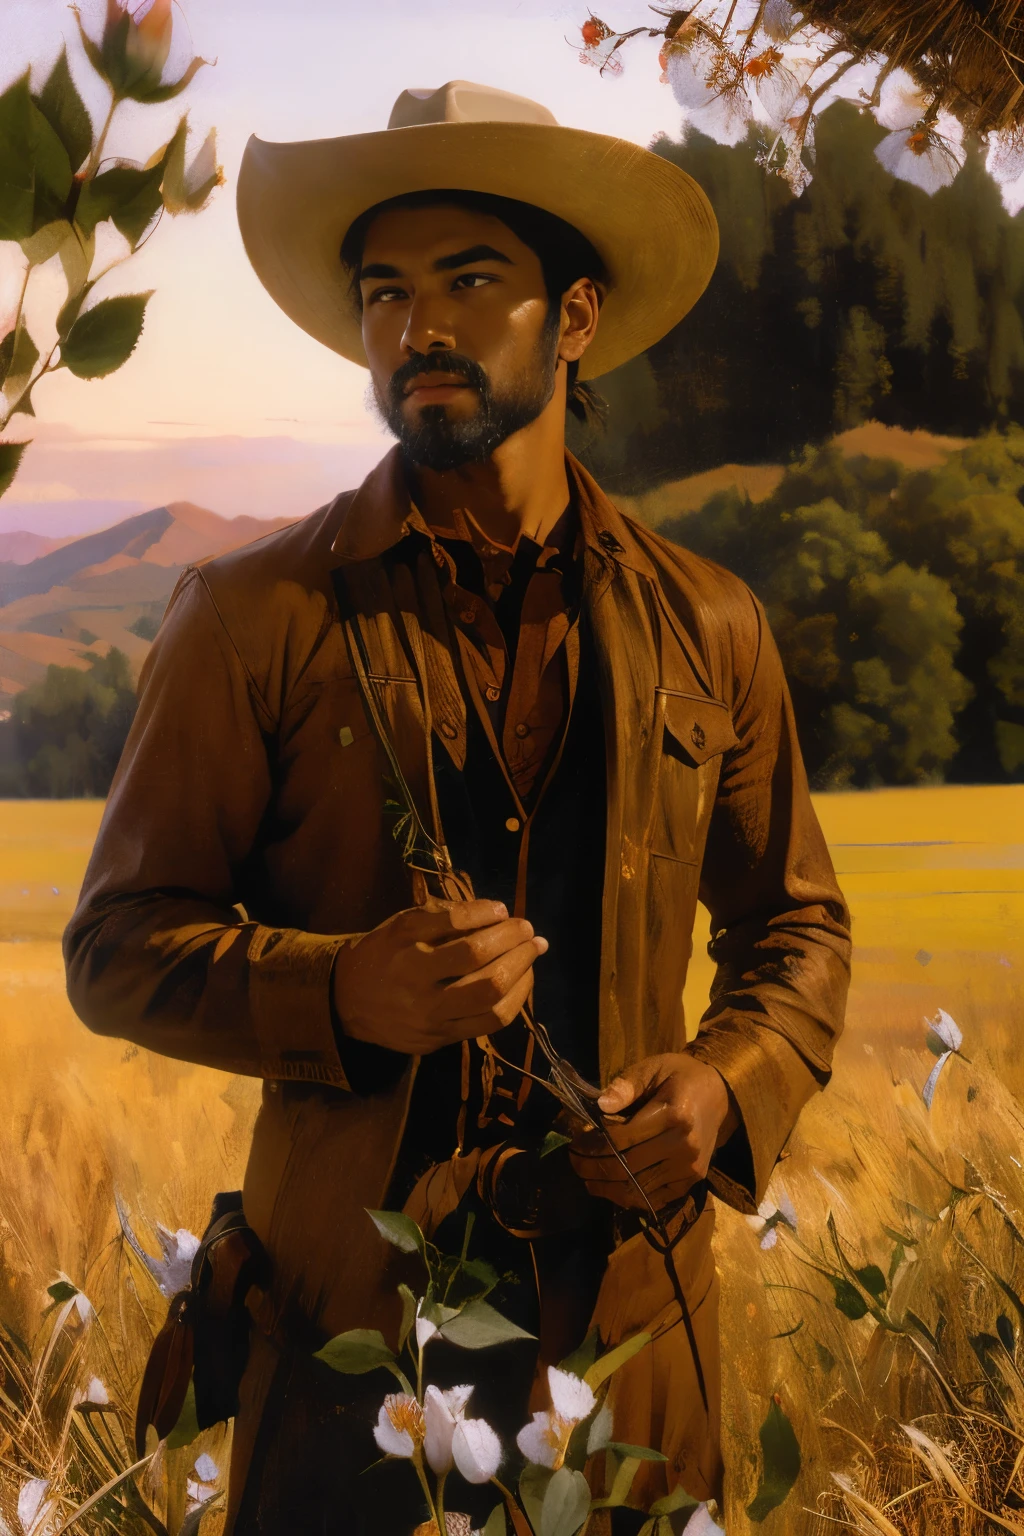 Cowboy mâle solitaire tenant des roses sauvages sur un champ, tenue marron, américain philippin, beau face, poils clairs du visage, cheveux de longueur moyenne, chapeau de cowboy marron clair, mulet, beau, coucher de soleil, 